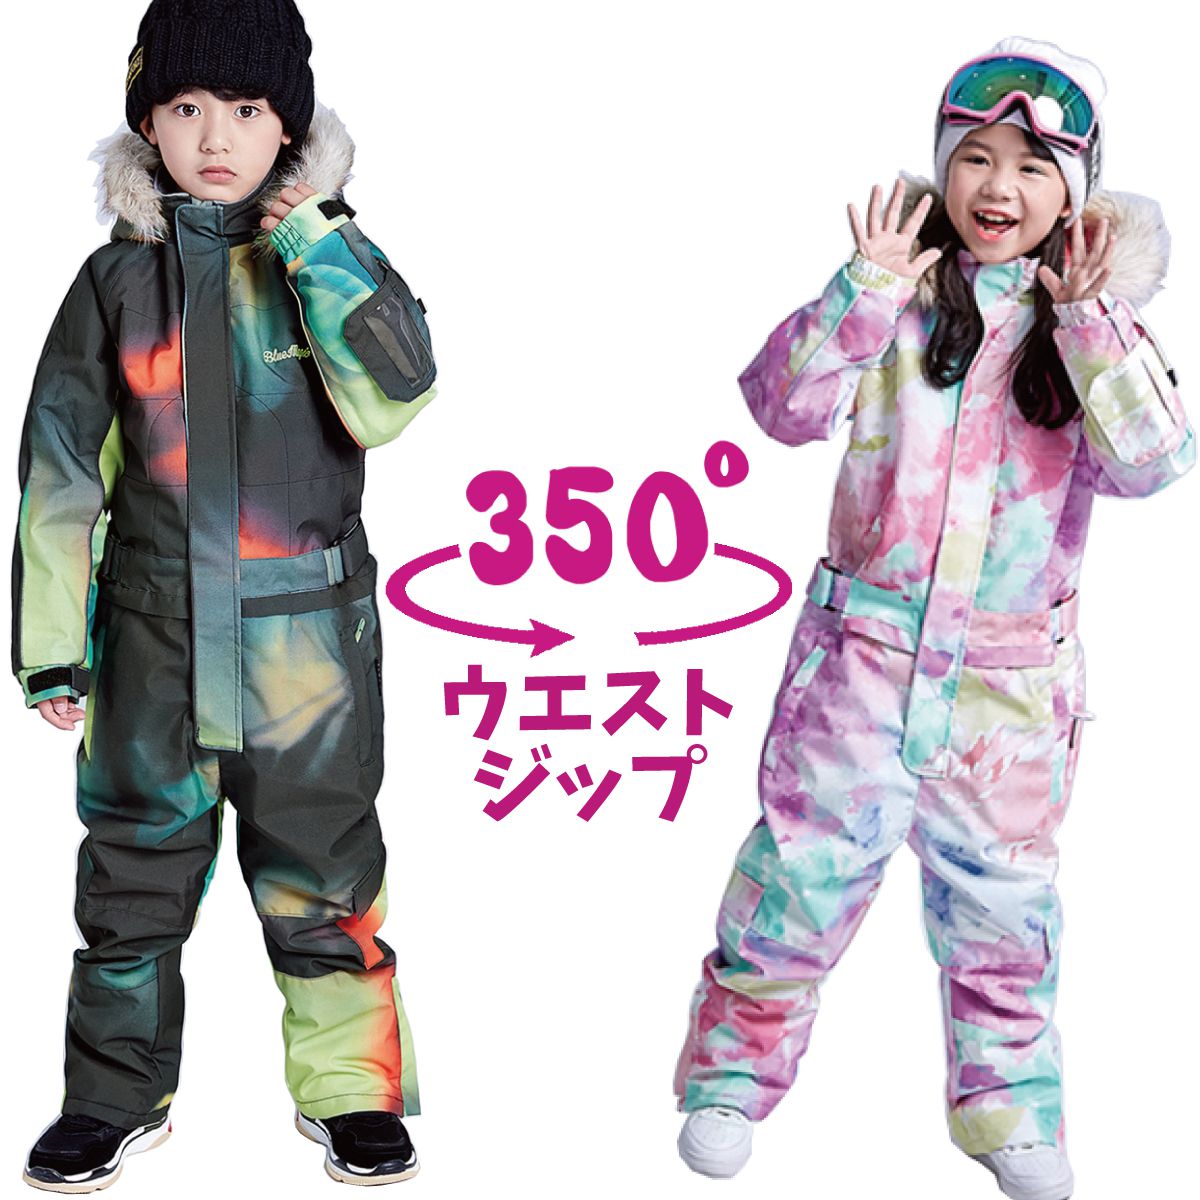 キッズやジュニア用のスキーウェア、上下セットで1万円台で買えるおすすめは？